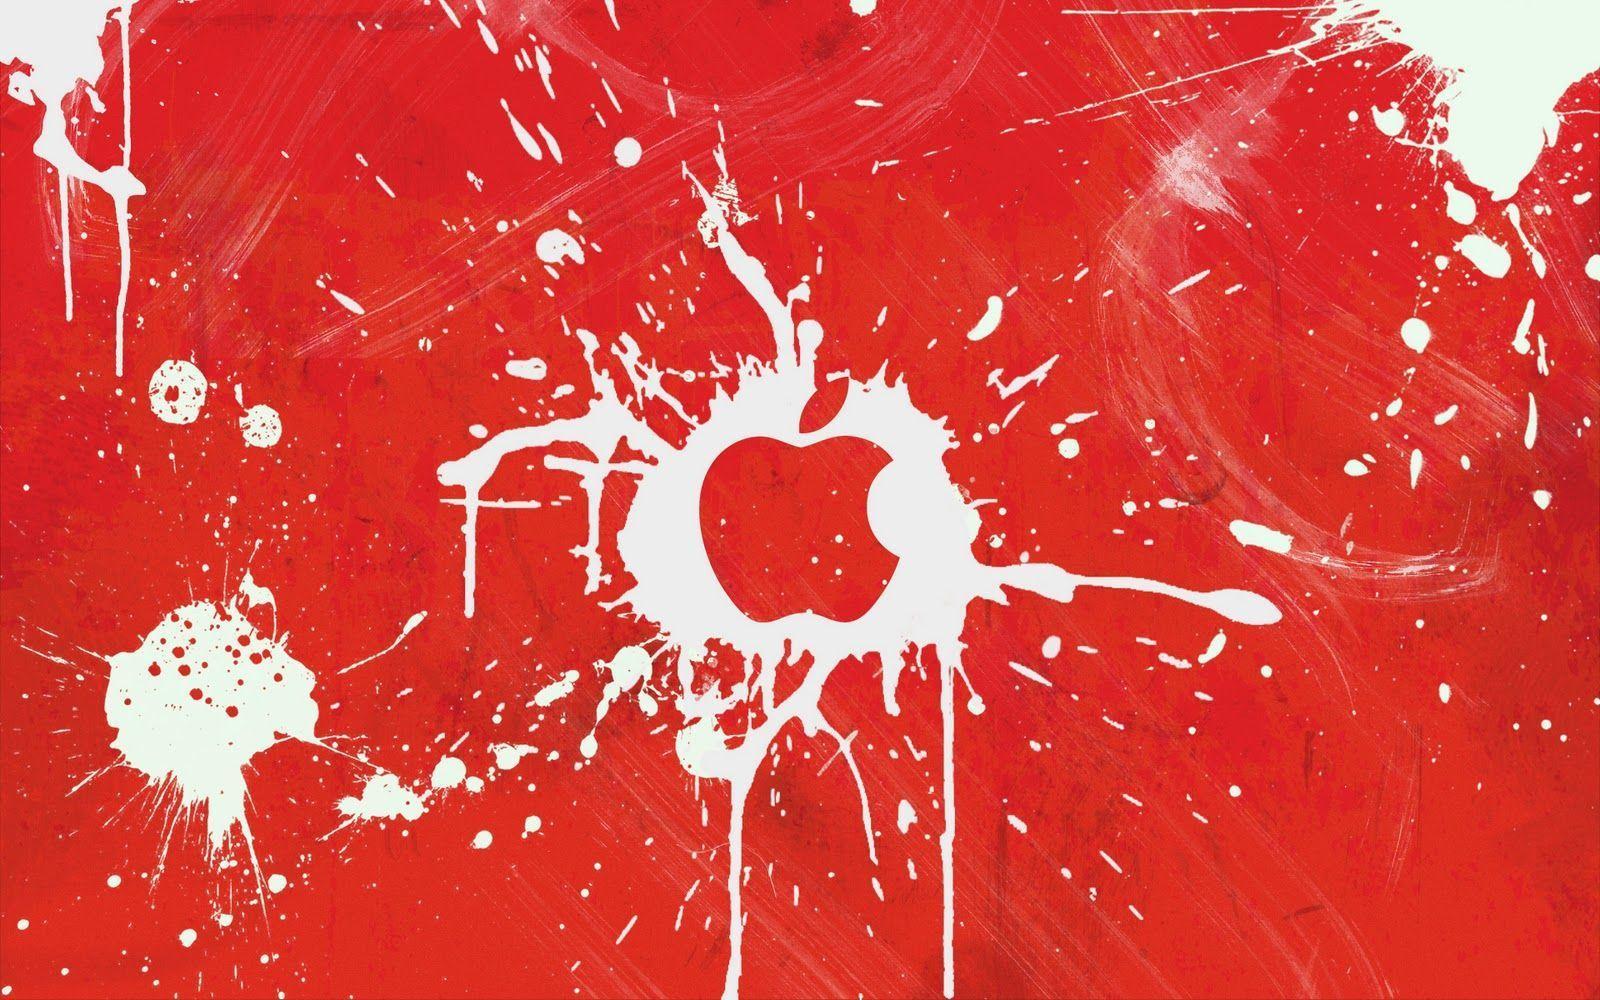 Red Apple For Wallpaper Wallpaper. walldesktophd